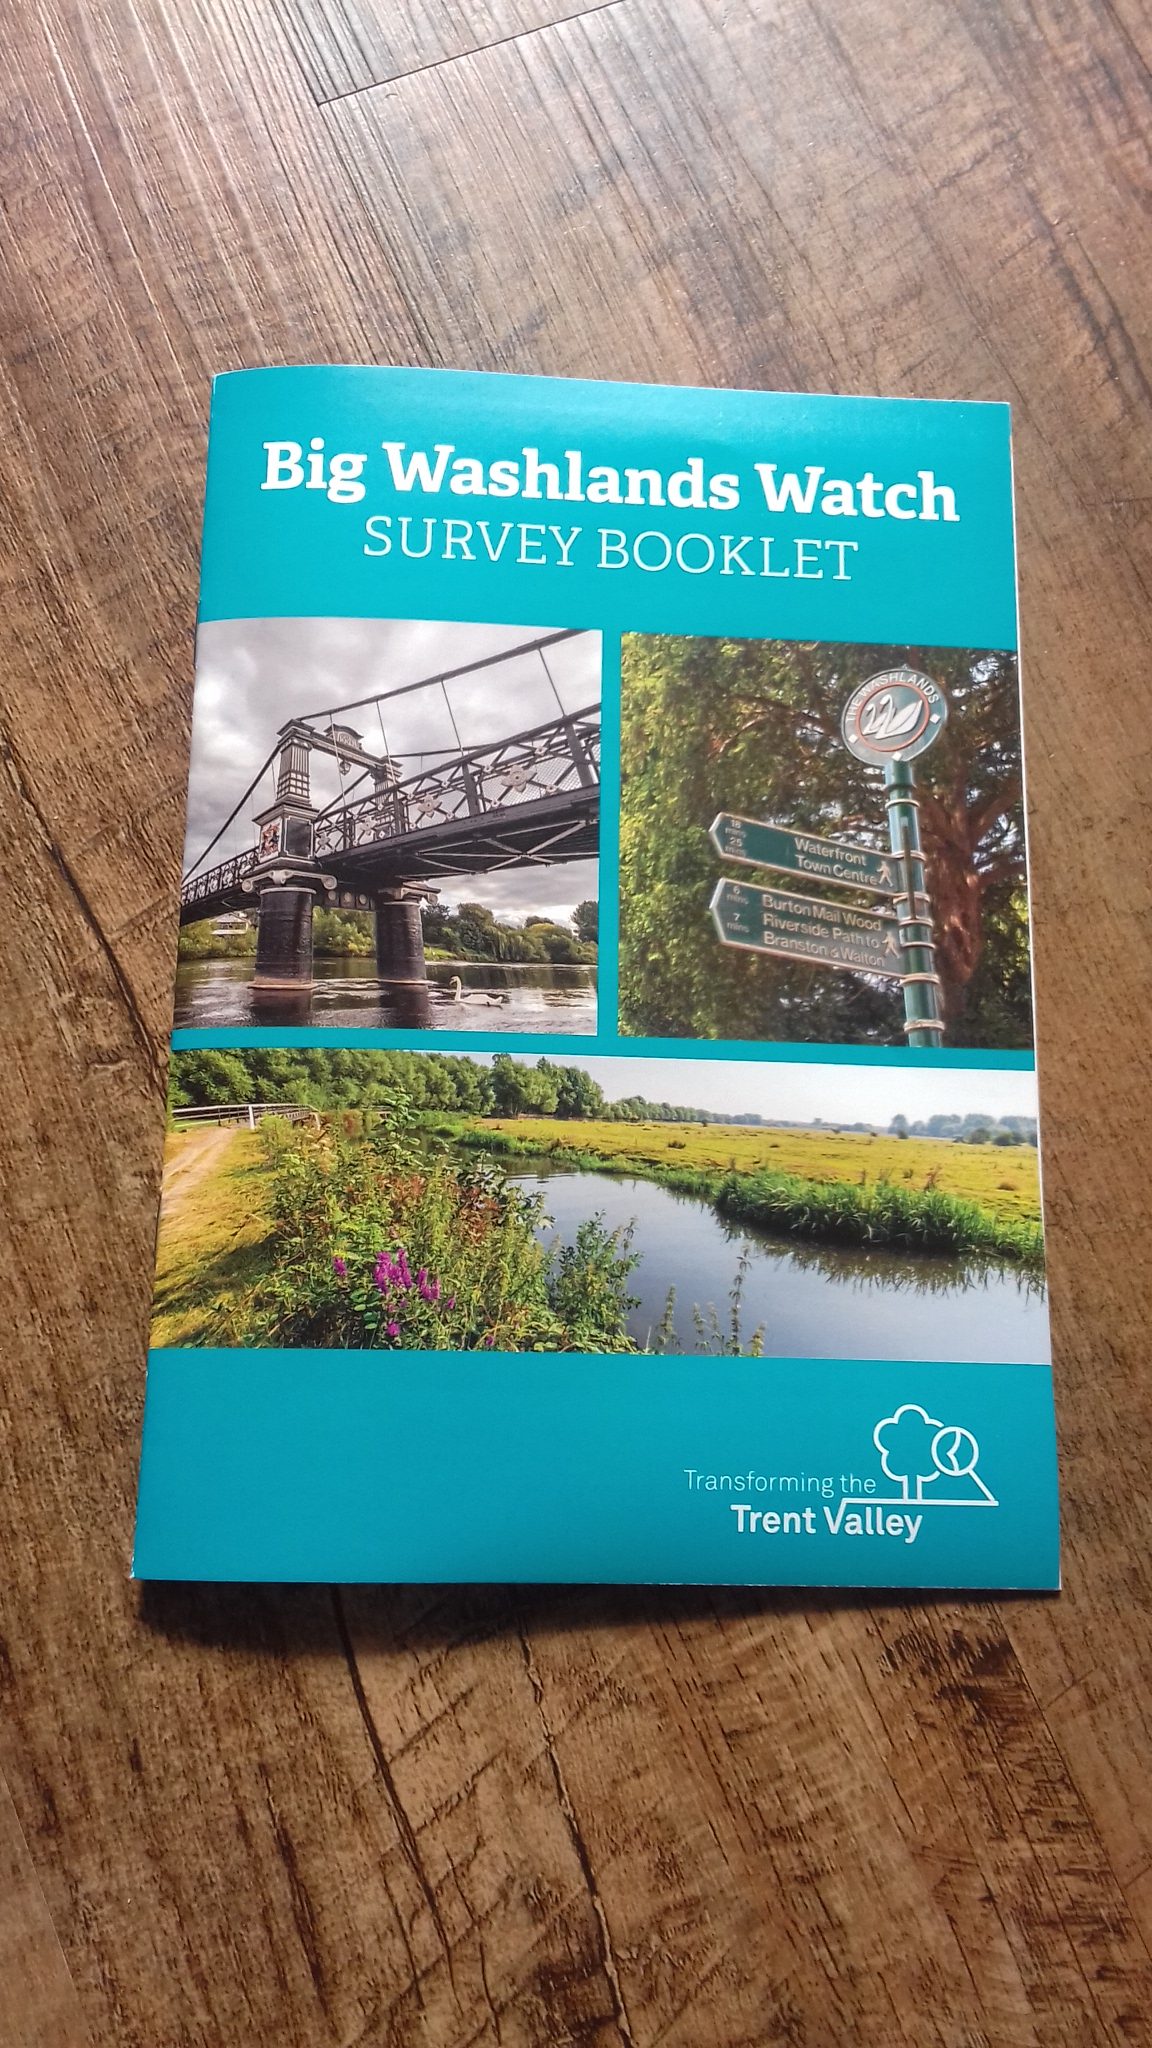 A blue booklet titled 'Big Washlands Watch' Survey Booklet